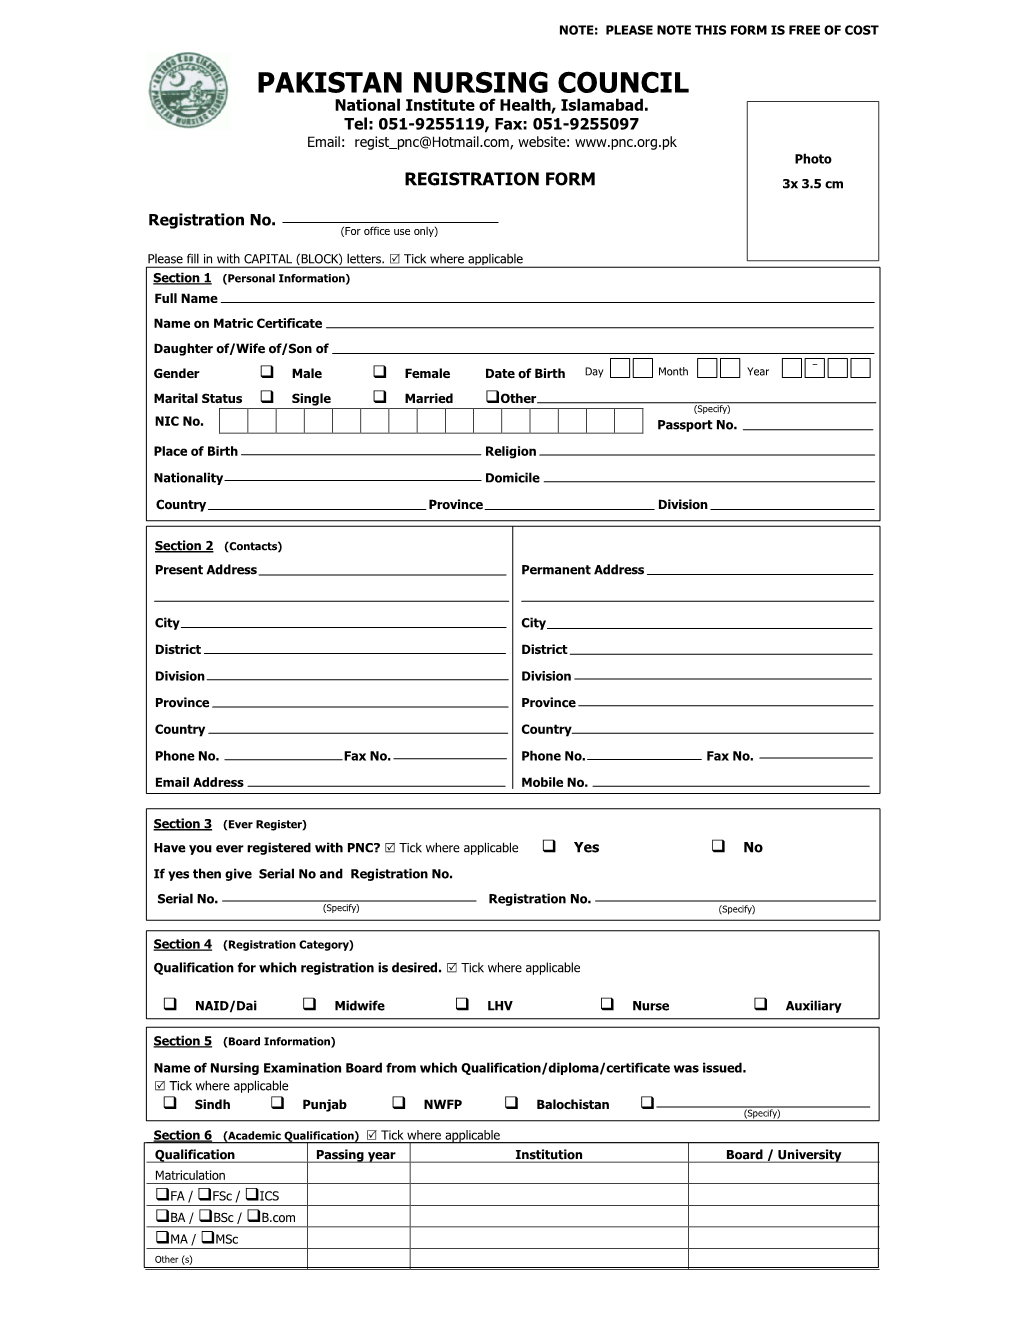 PNC Registration For